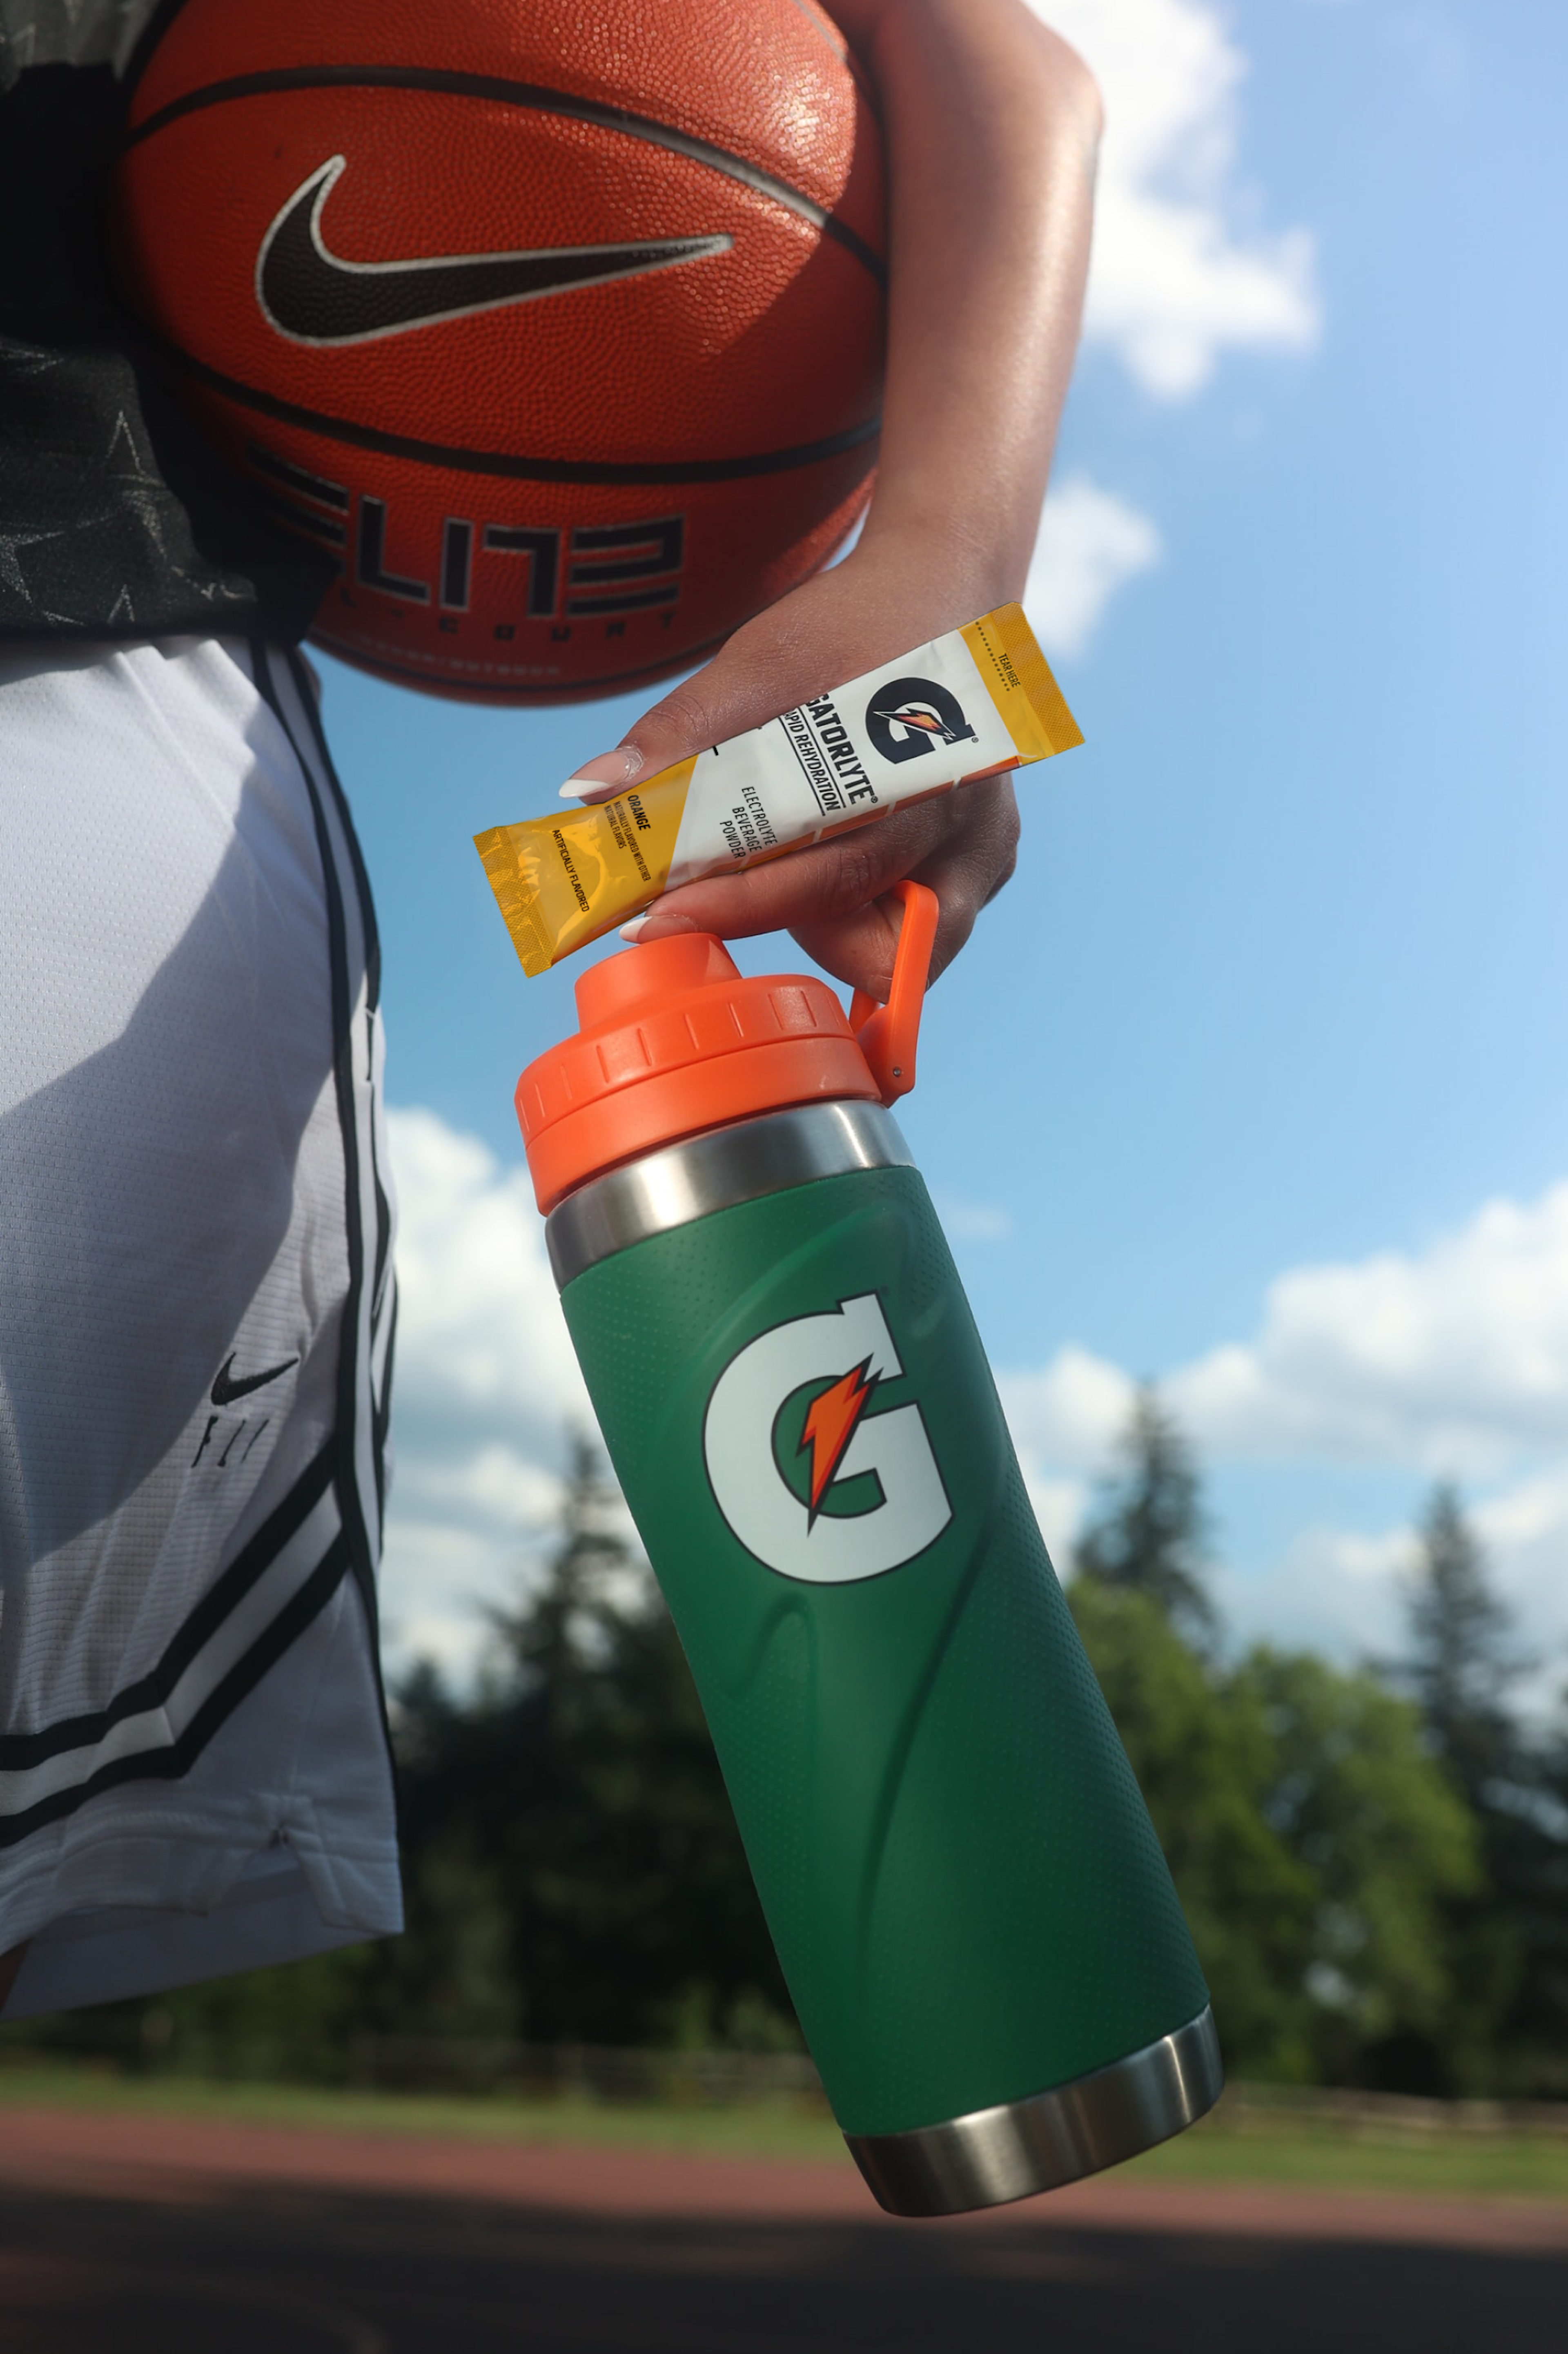 Athlete holding Gatorlyte orange single serve packet with Gx stainless steel bottle